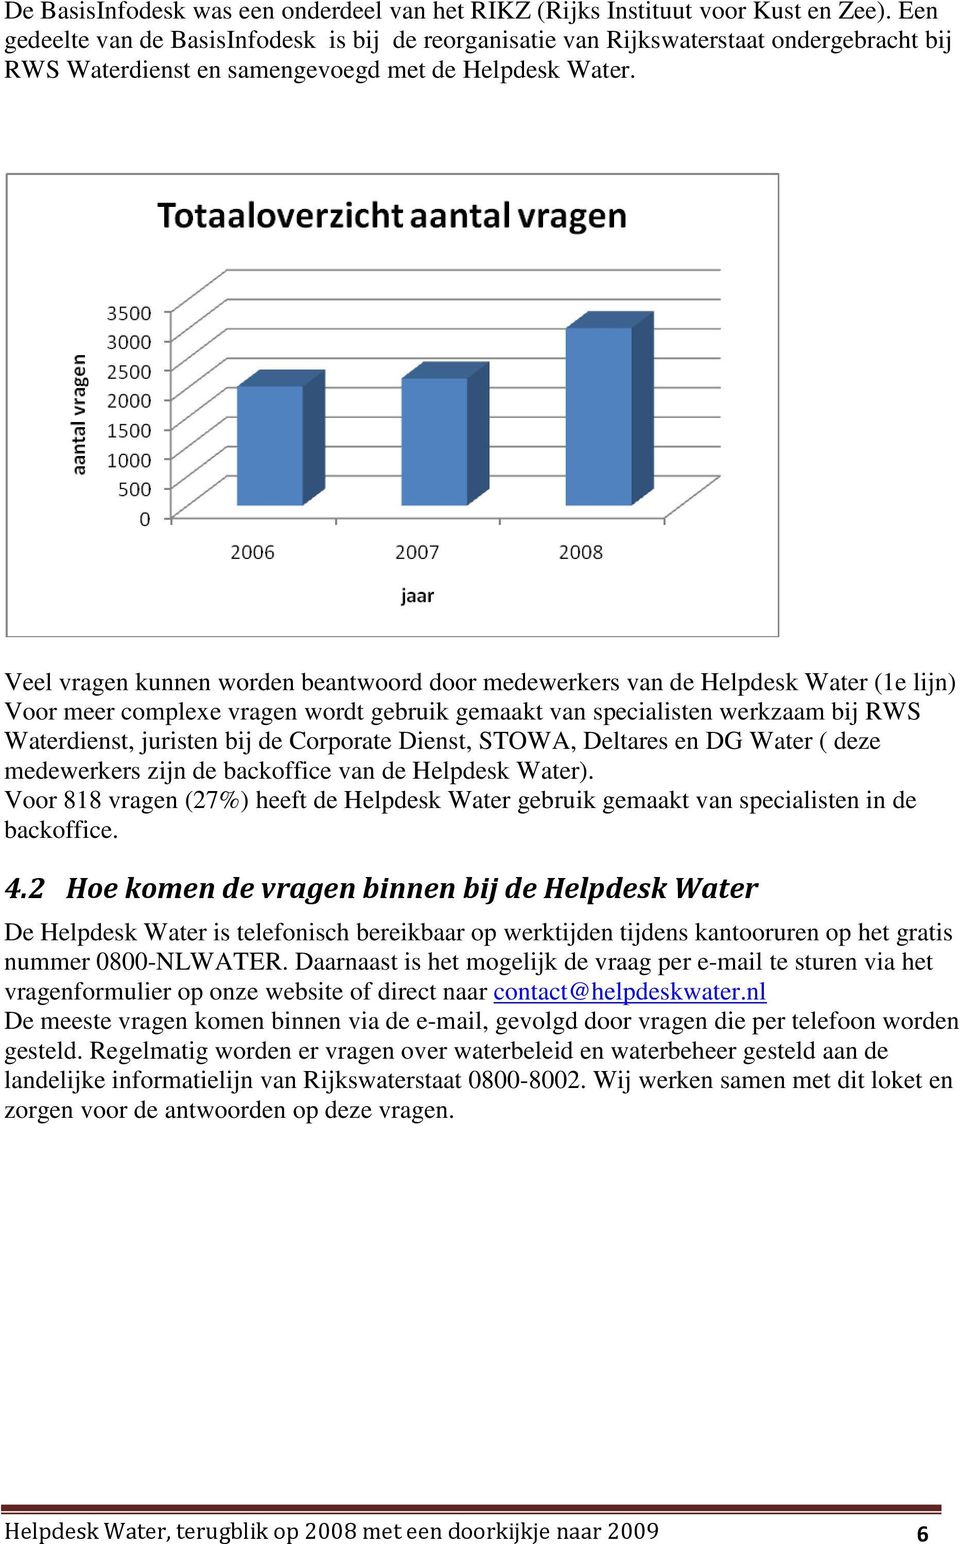 Veel vragen kunnen worden beantwoord door medewerkers van de Helpdesk Water (1e lijn) Voor meer complexe vragen wordt gebruik gemaakt van specialisten werkzaam bij RWS Waterdienst, juristen bij de